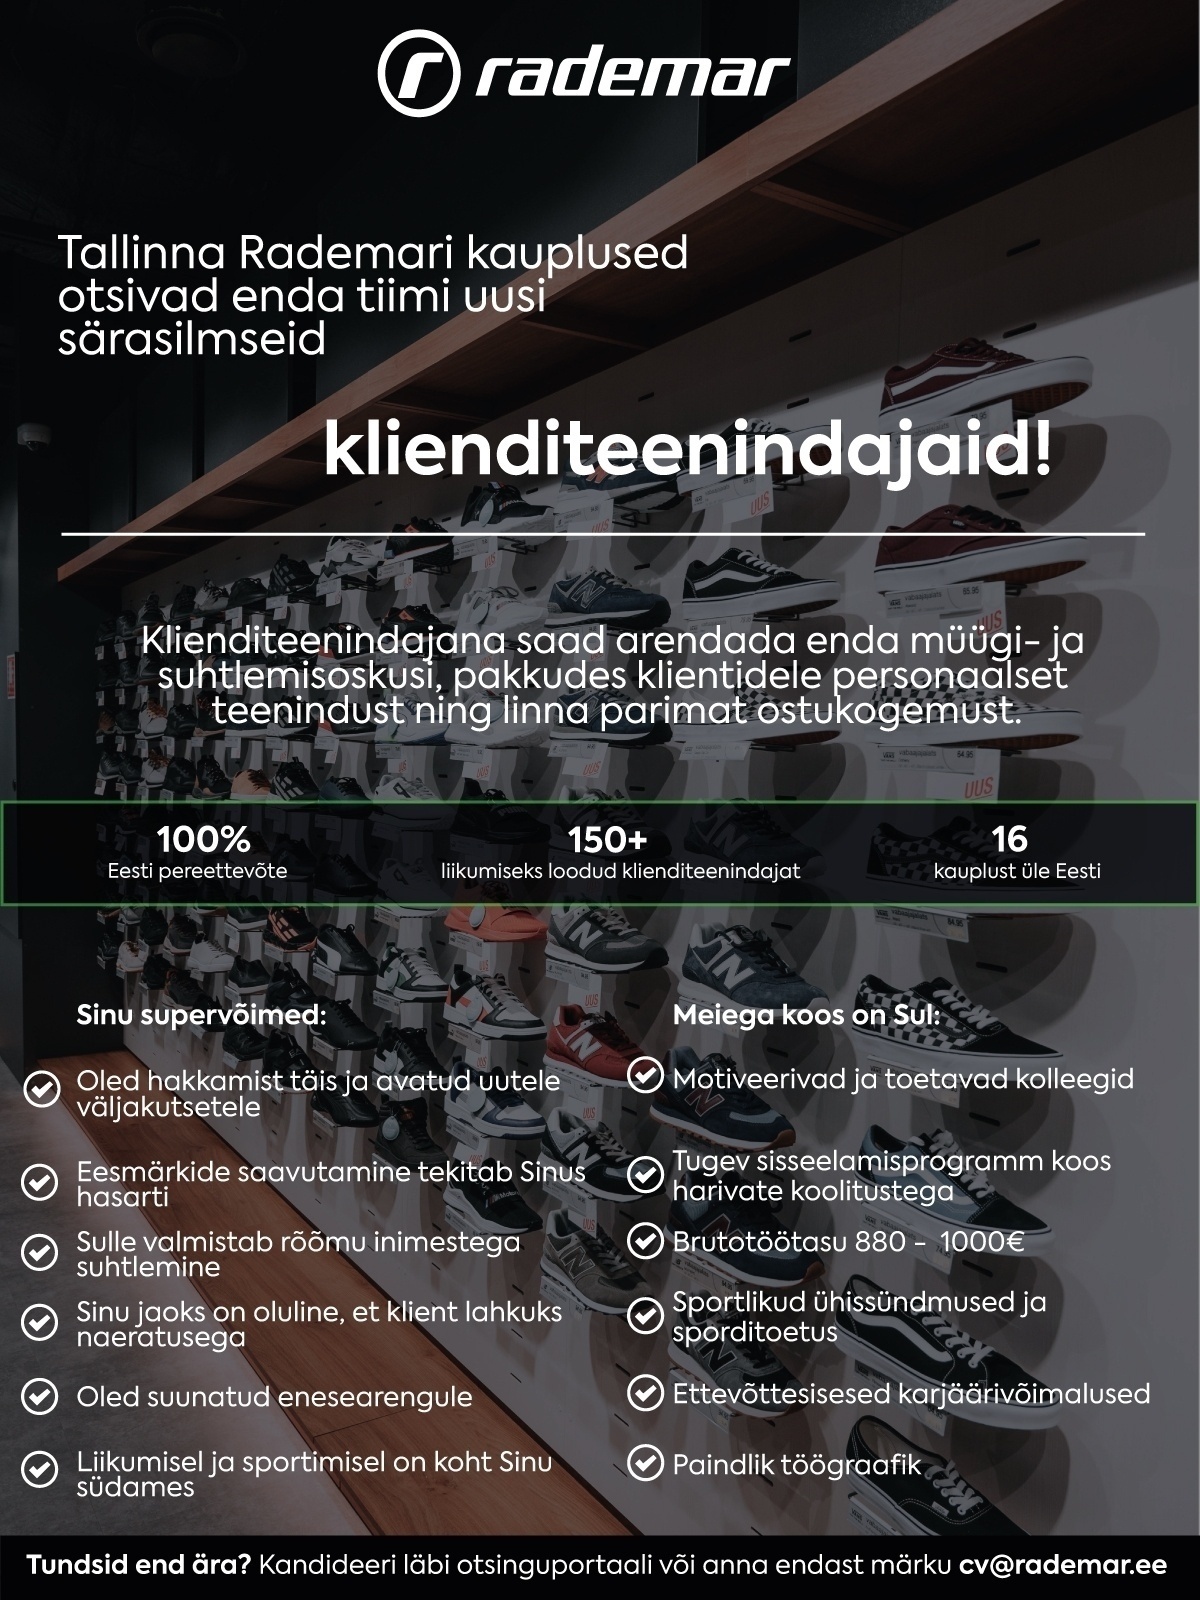 OÜ Rademar Aktiivsed klienditeenindajad Tallinna Rademari kauplustesse